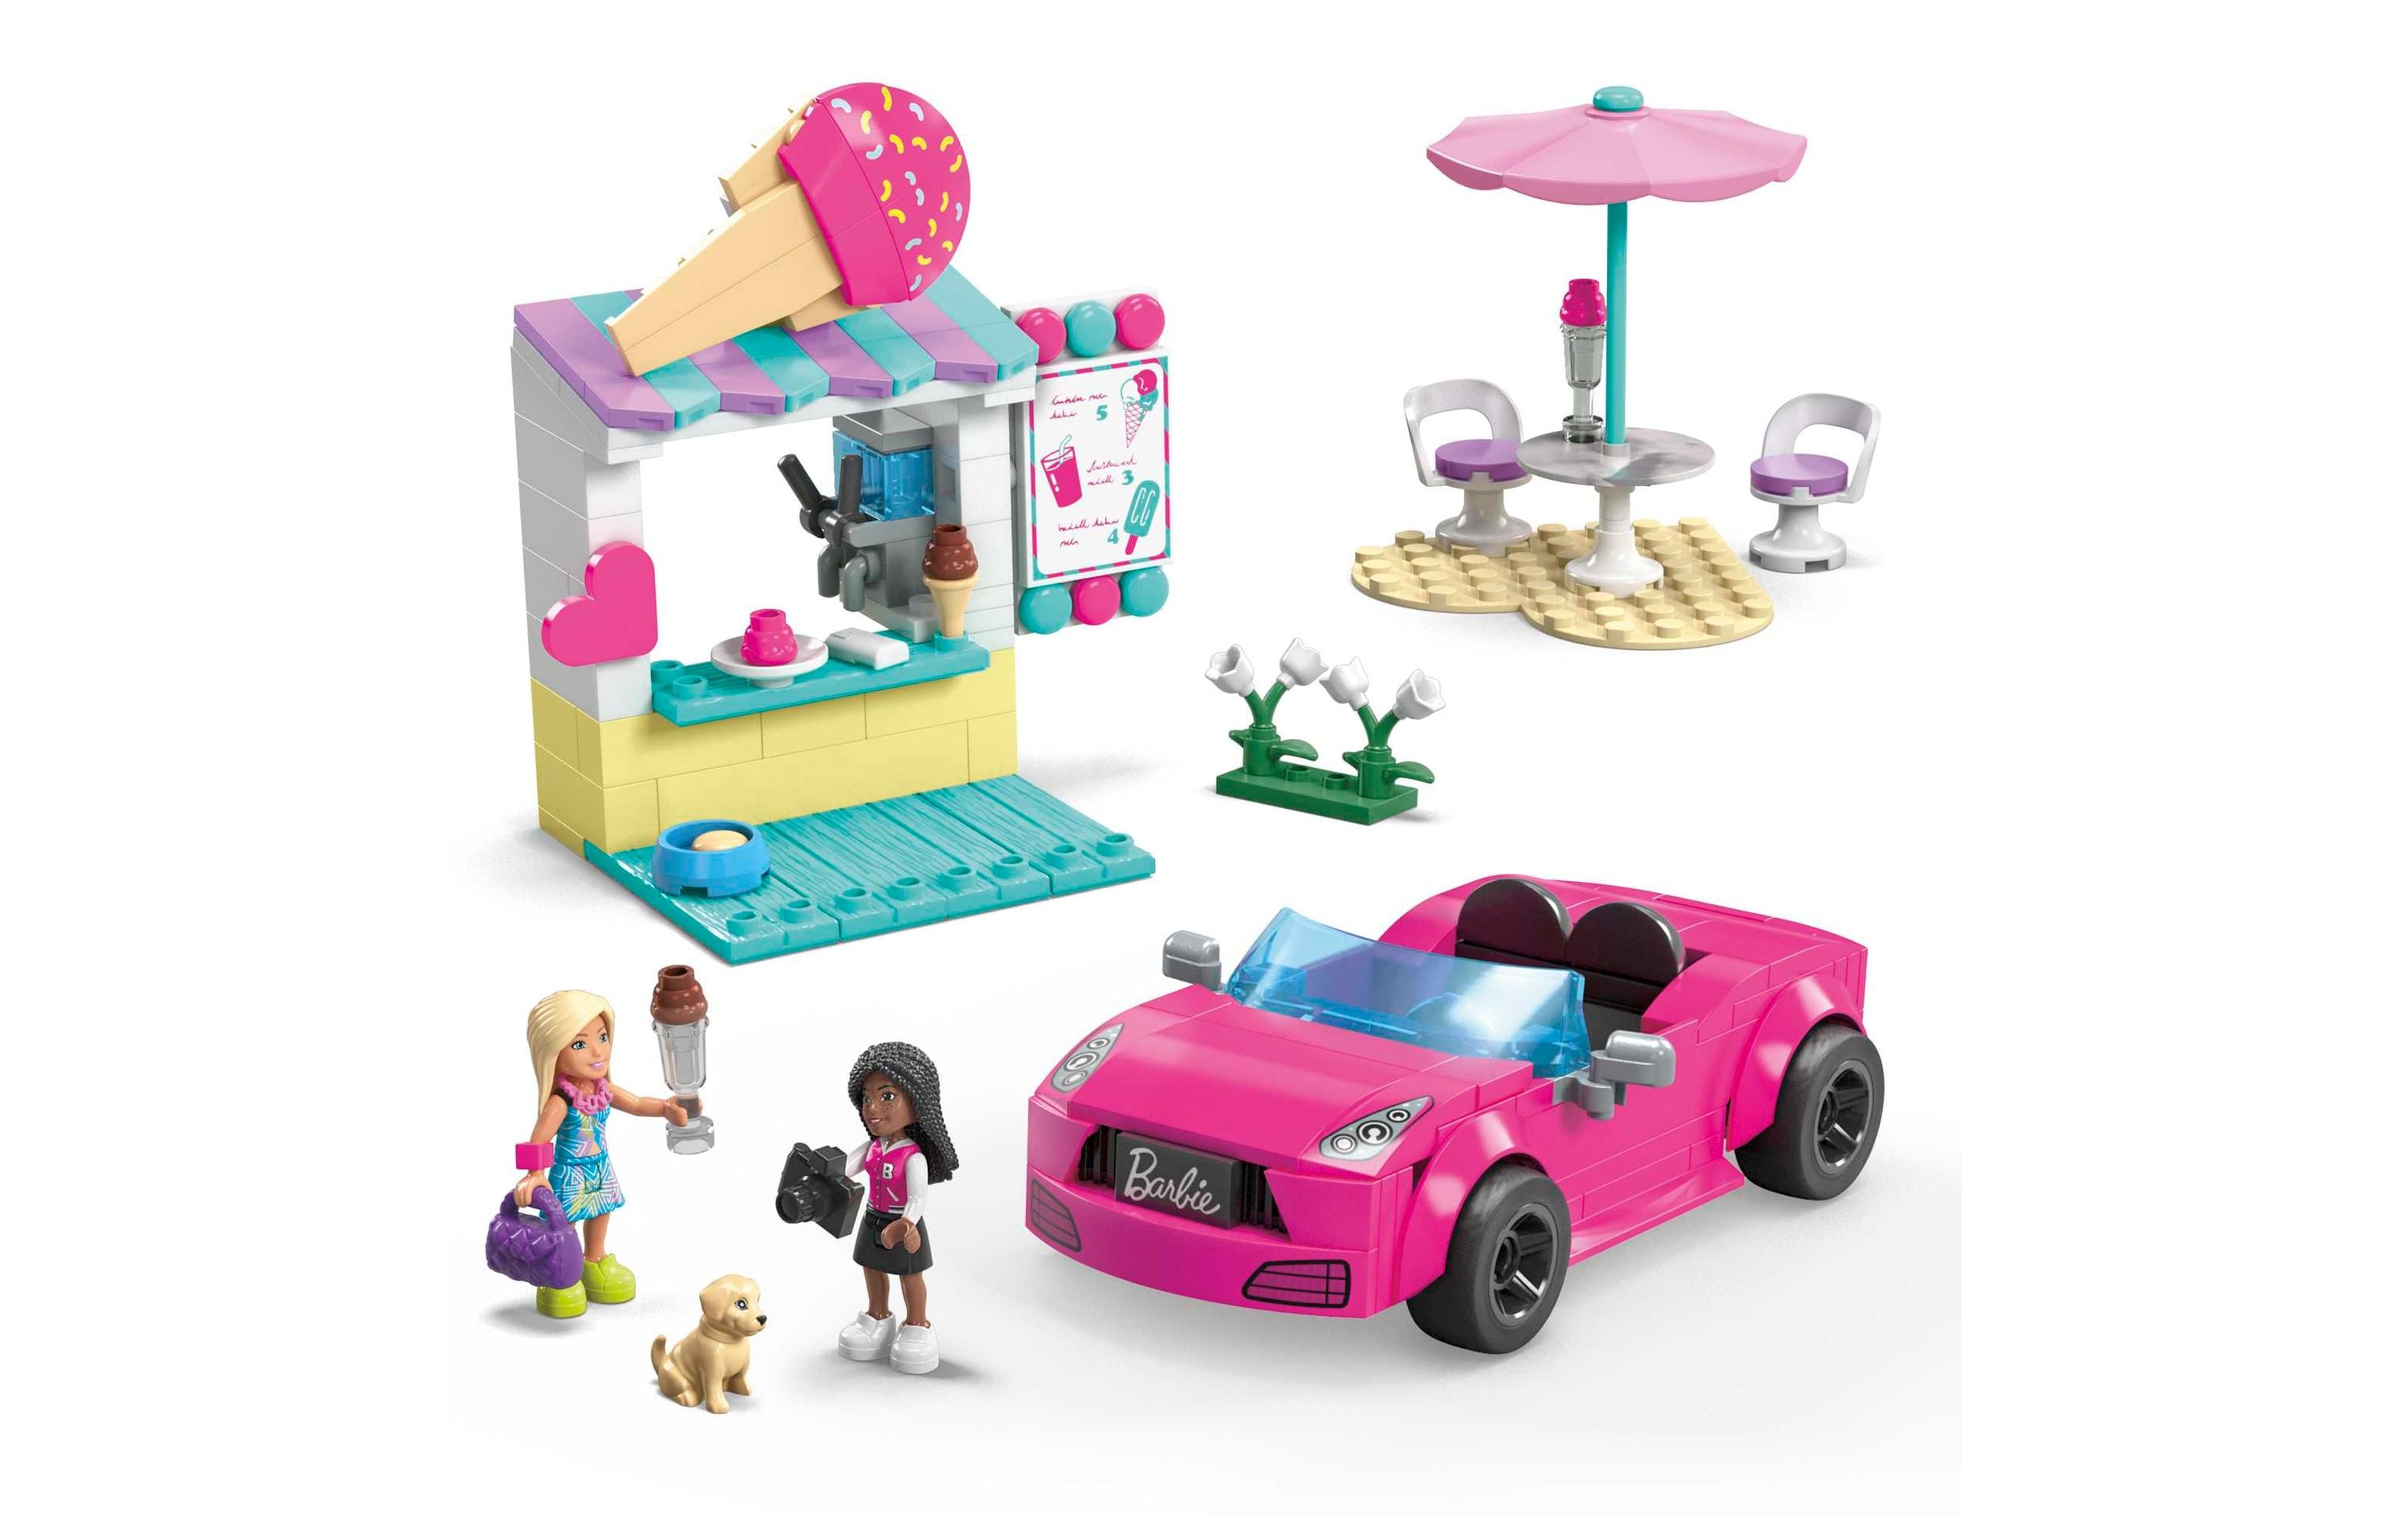 Mega Construx Barbie Cabrio & Eisstand